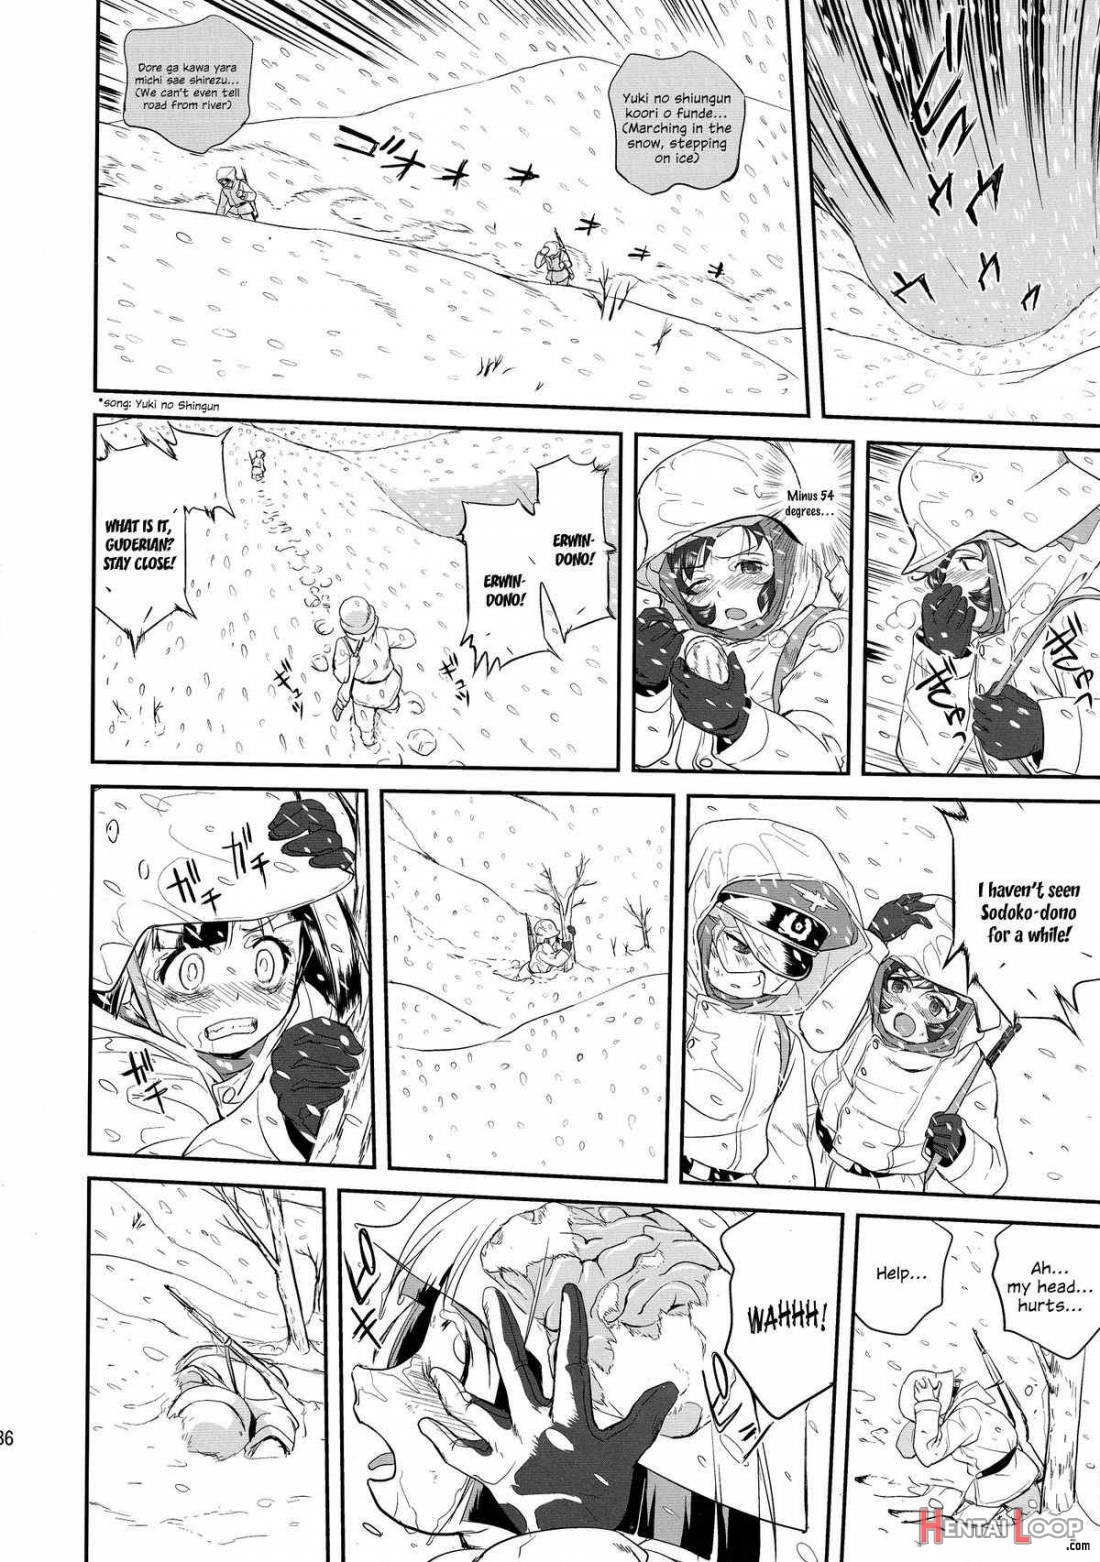 Yukiyukite Senshadou Battle of Pravda page 35